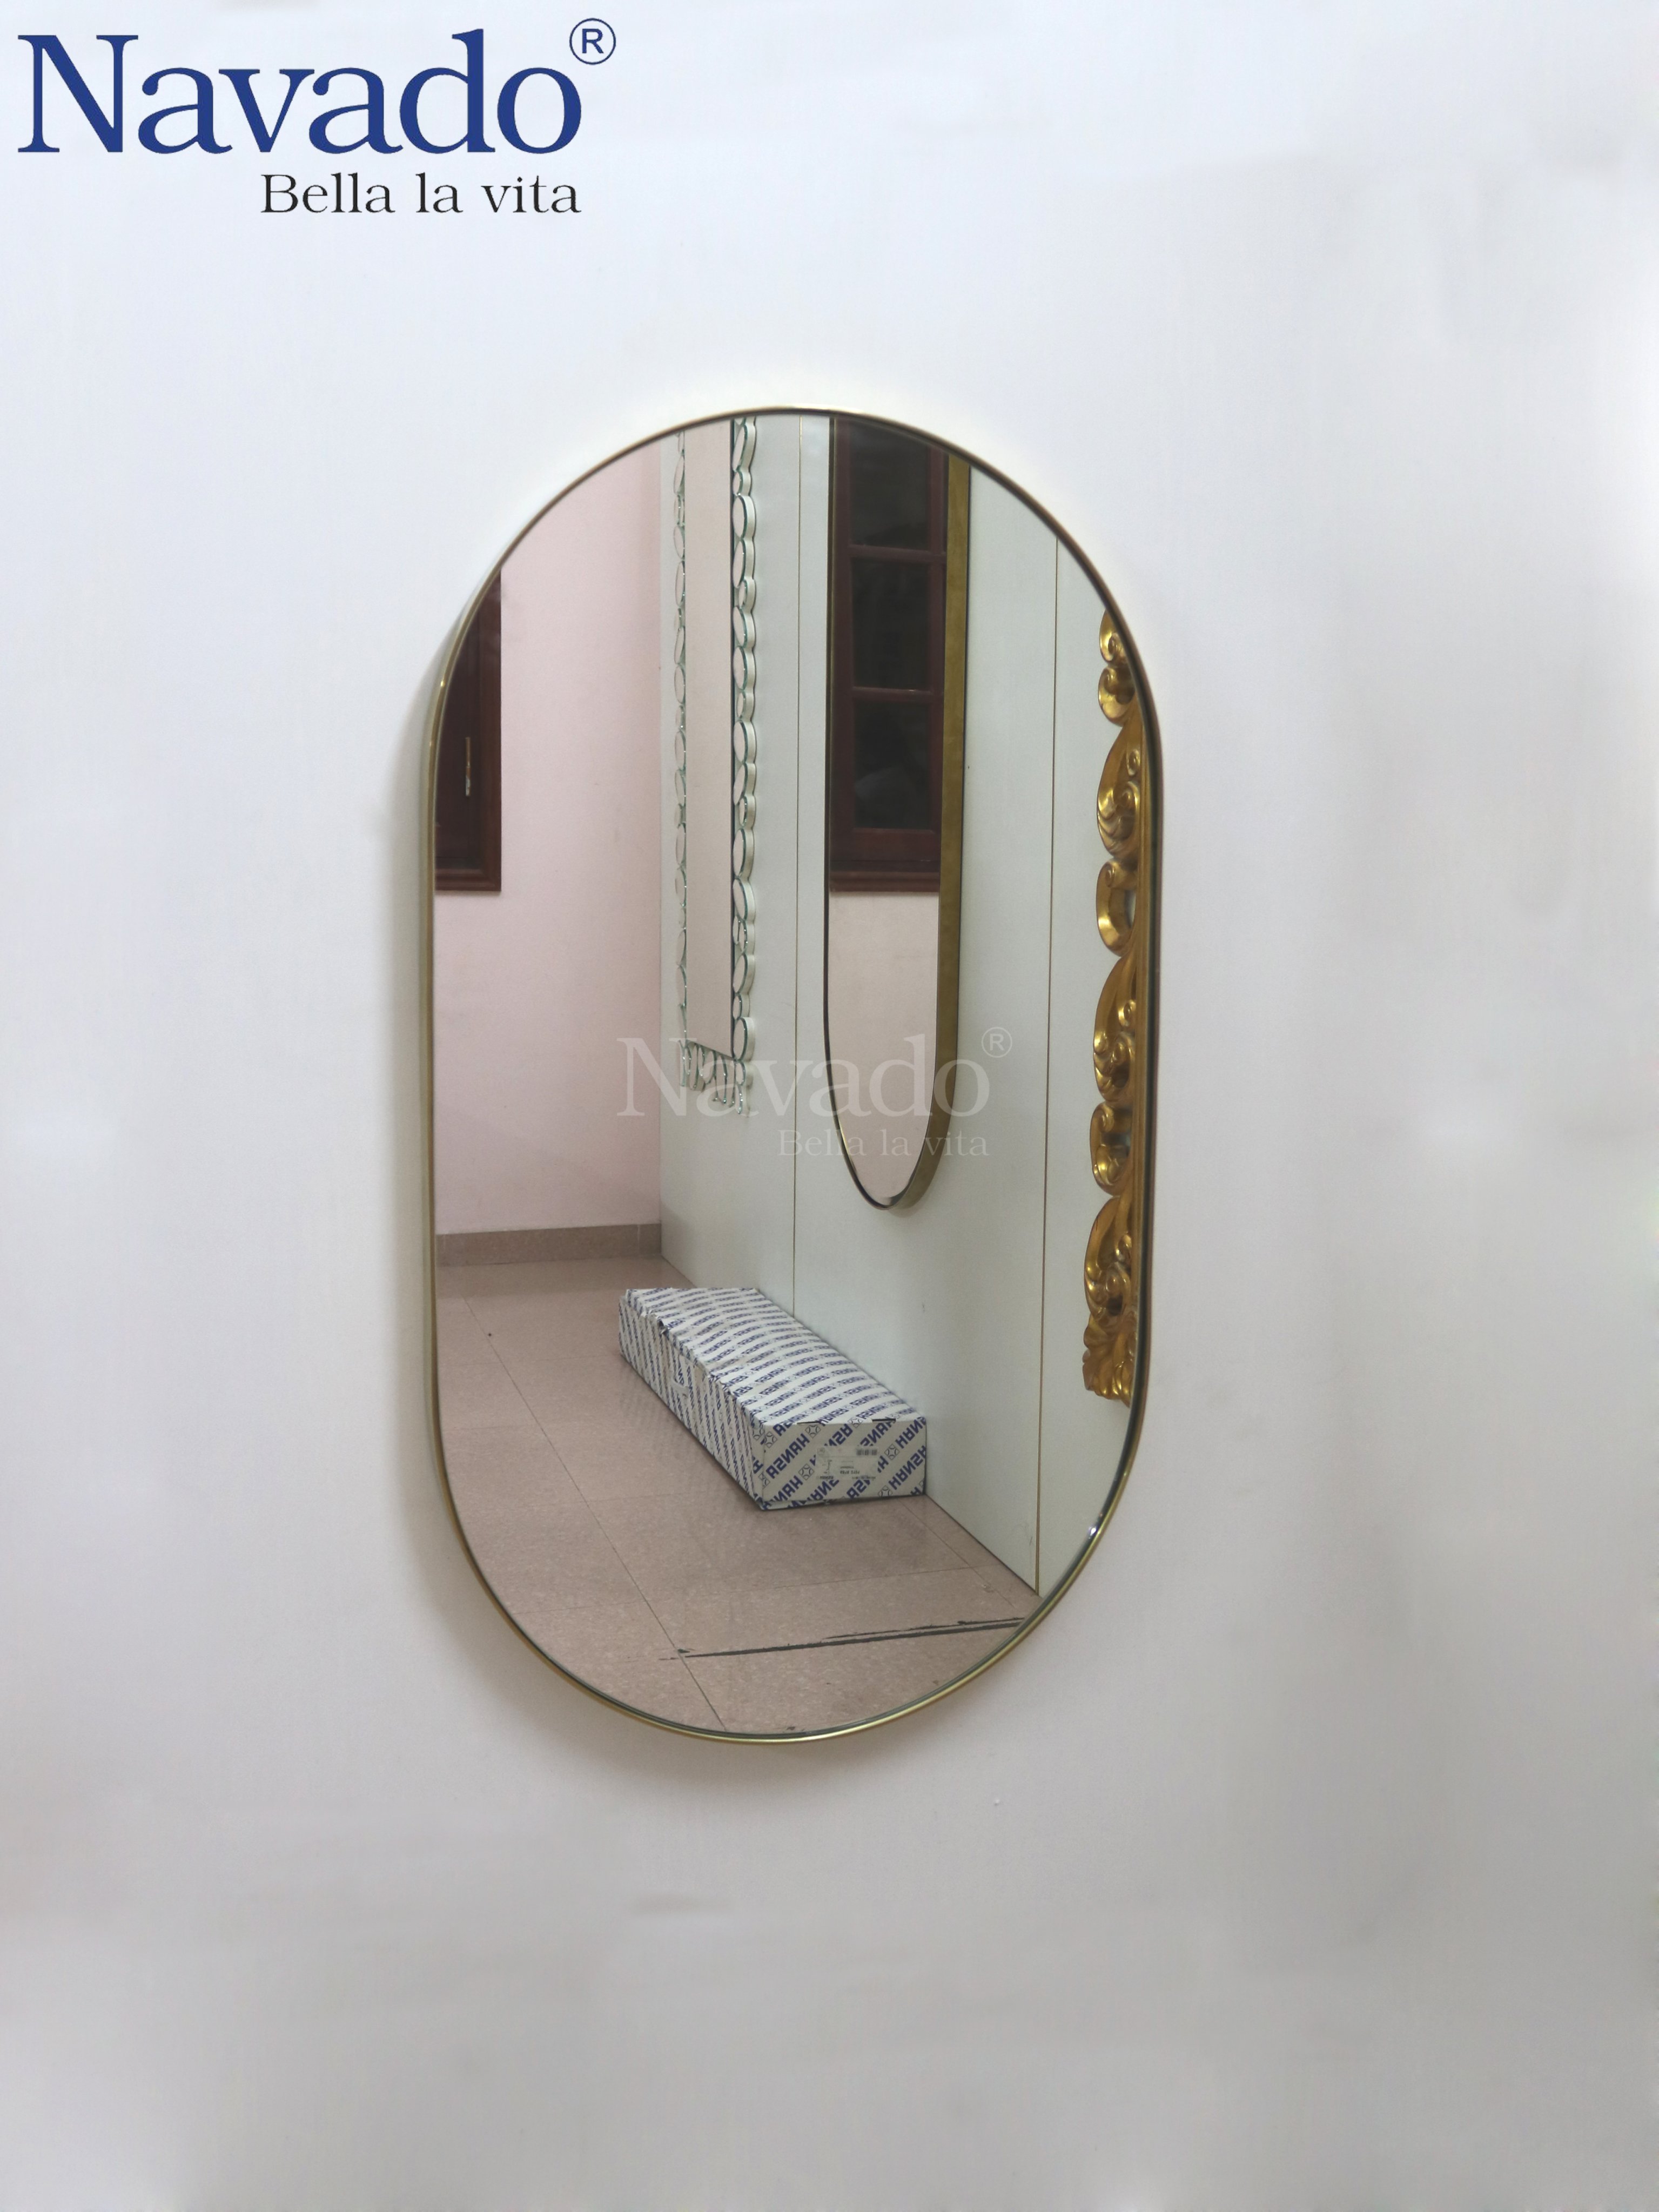 Gương phòng tắm inox mạ vàng: Gương phòng tắm inox mạ vàng sẽ đem lại phong cách sang trọng và đẳng cấp cho căn phòng tắm của bạn. Với chất liệu cao cấp, thiết kế đẹp mắt và độ bền cao, sản phẩm này sẽ là sự lựa chọn hoàn hảo cho những ai yêu thích phong cách hiện đại và sang trọng.